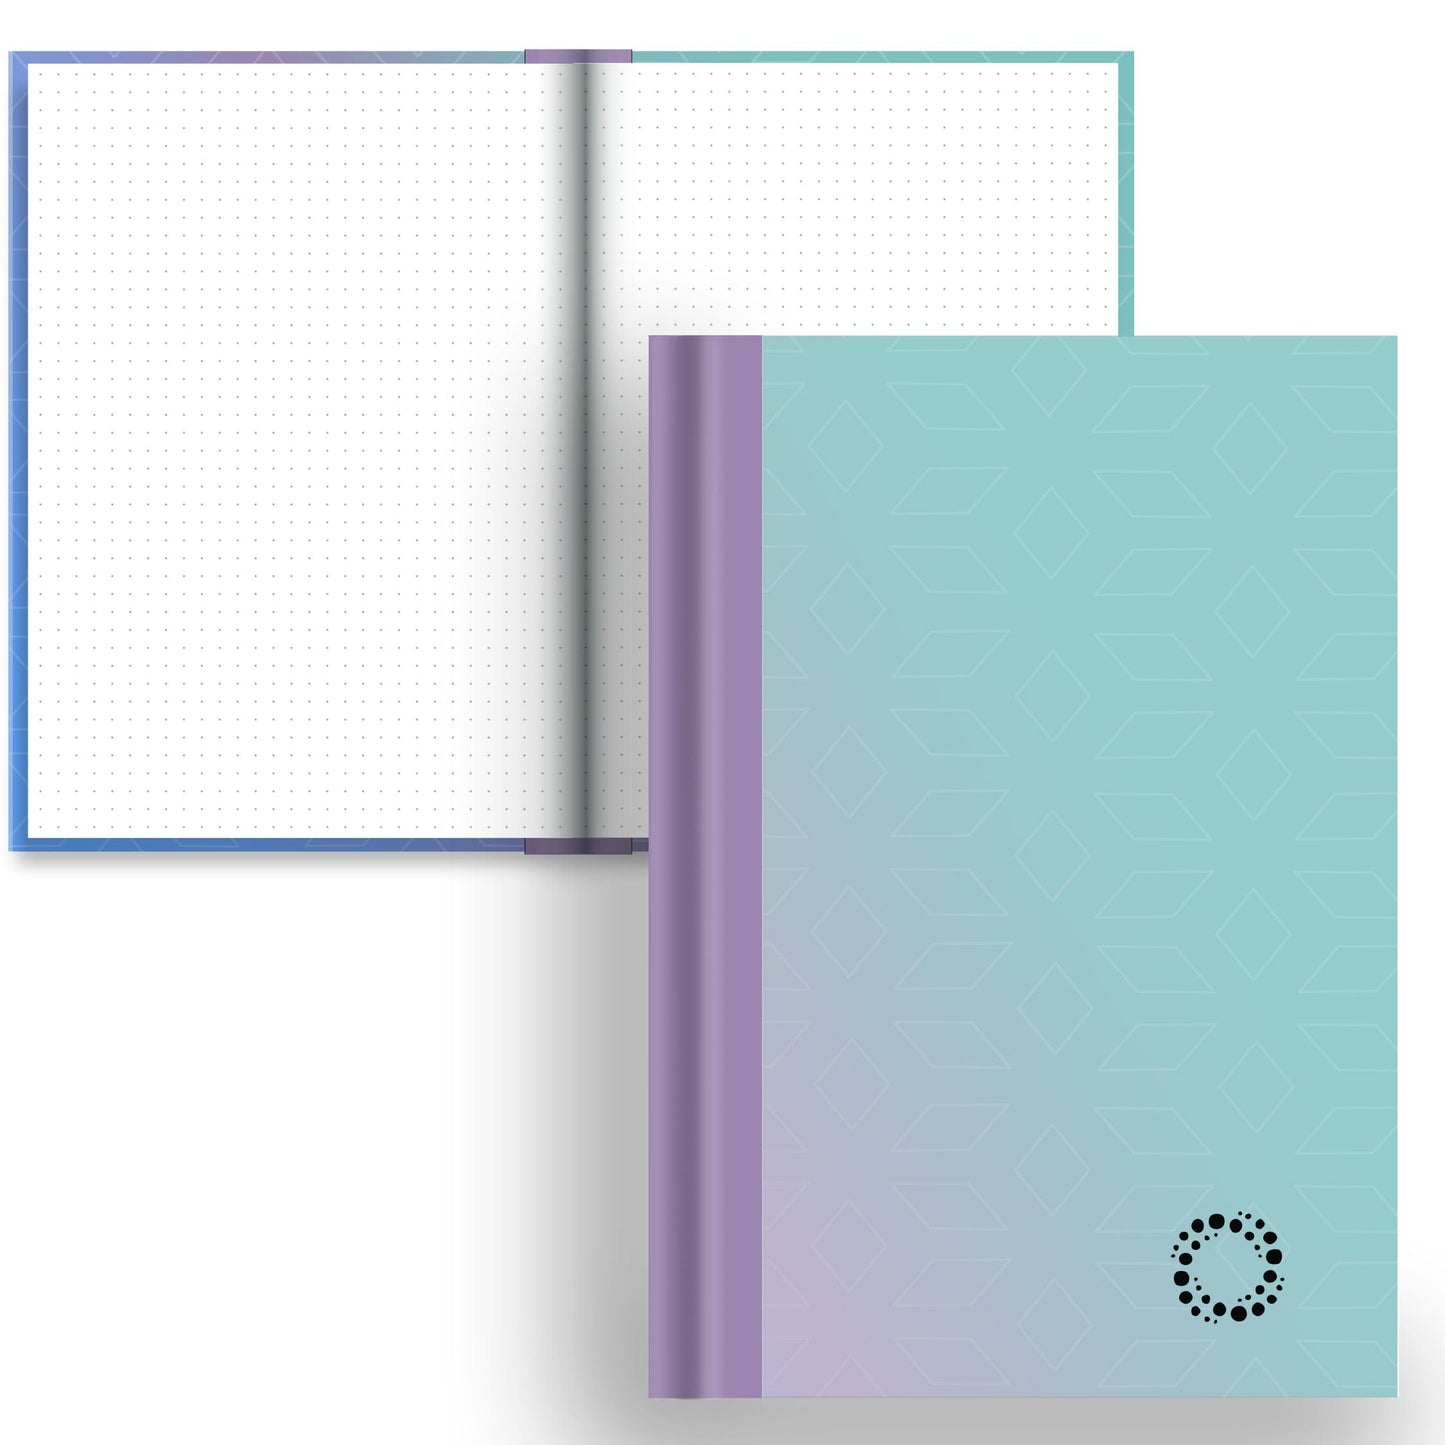 DayDot Journals A5 Notebook Dot Grid Ombre - A5 Hardback Notebook